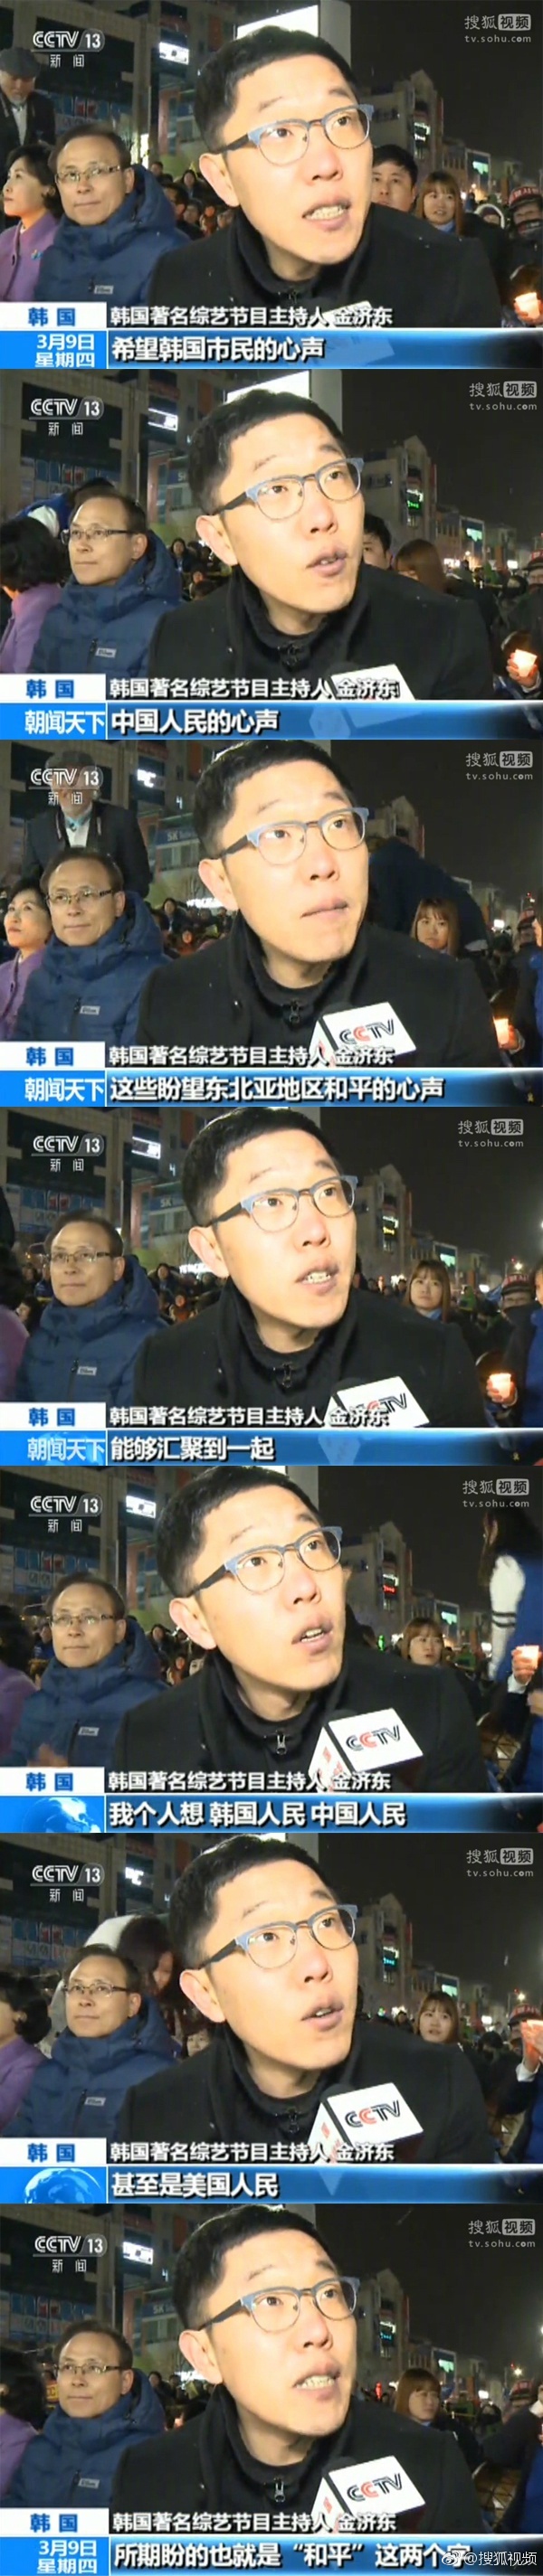 韩国金泉市民举行第200次集会反对“萨德”，听听韩国的民众怎么说